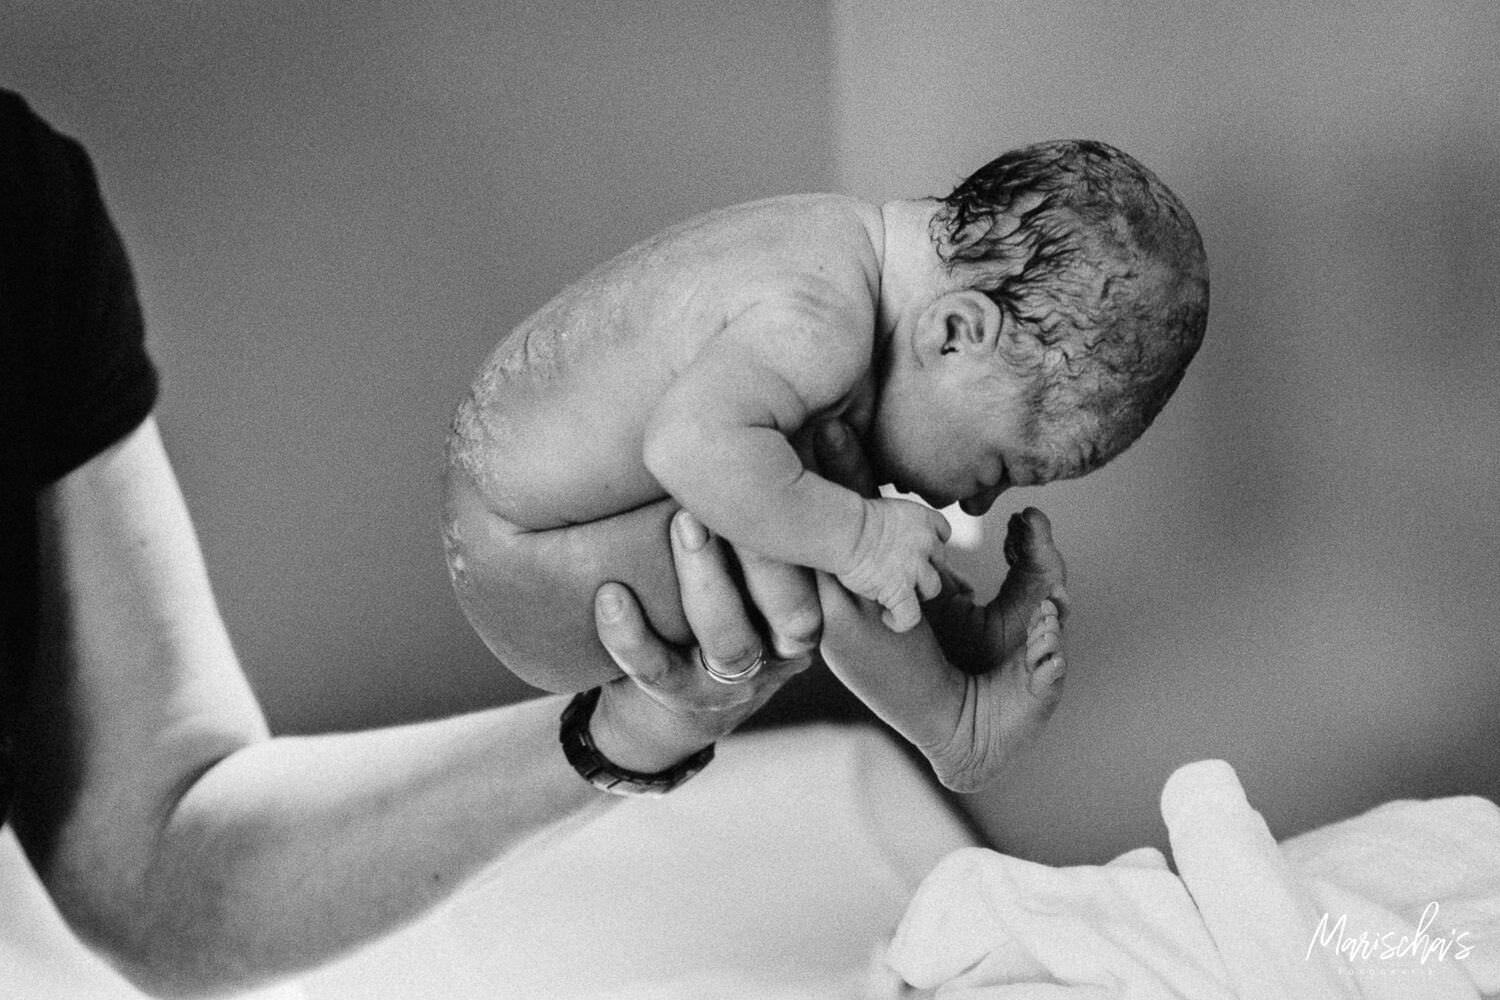 Geboortefotograaf voor een bevalling in het ziekenhuis Zuyderland in Heerlen